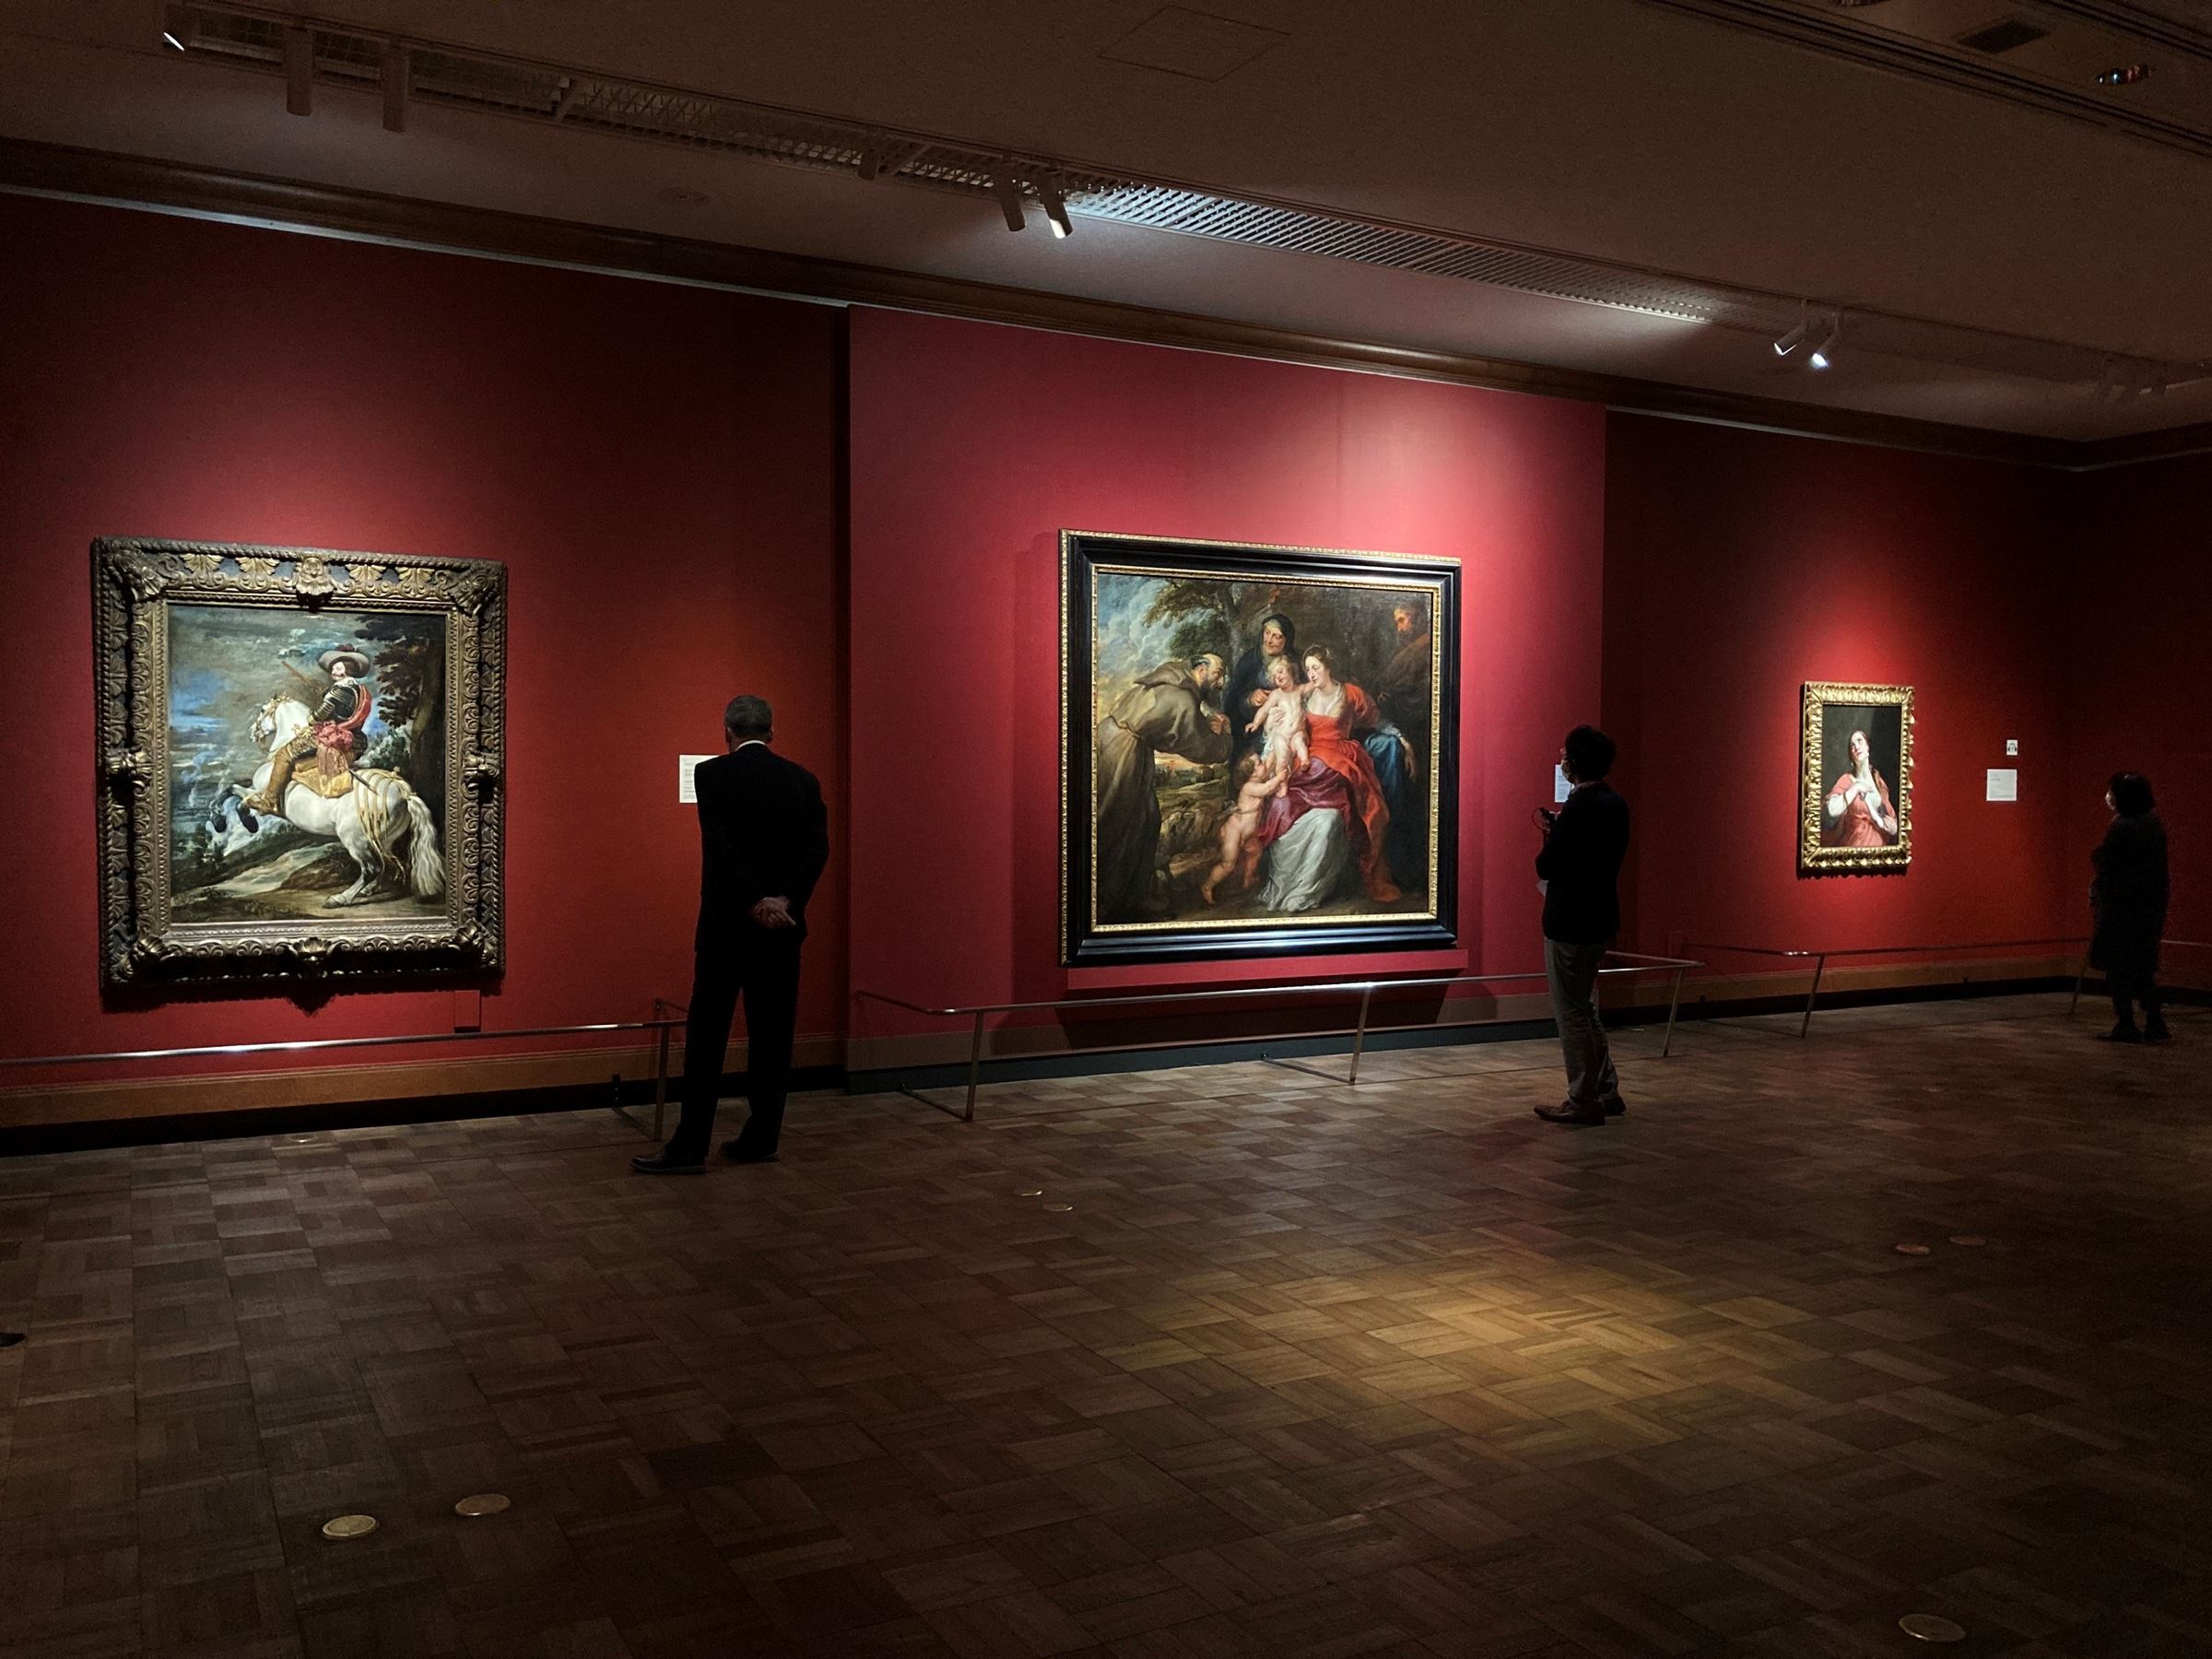 （左）ベラスケスと工房（1623-60年）《オリバーレス伯公爵ガスパール・デ・グスマン（1587-1645年）》1636年頃／以降　ニューヨーク、メトロポリタン美術館 Fletcher Fund, 1952 / 52.125　（中）ペーテル・パウル・ルーベンス《聖家族と聖フランチェスコ、聖アンナ、幼い洗礼者聖ヨハネ》1630年代初頭／中頃　ニューヨーク、メトロポリタン美術館 Gift of James Henry Smith, 1902 / 02.24 （右）グイド・カニャッチ《クレオパトラの死》1645-55年頃　ニューヨーク、メトロポリタン美術館 Purchase, Diane Burke Gift, Gift of J. Pierpont Morgan, by exchange, Friends of European Paintings Gifts, Gwynne Andrews Fund, Lila Acheson Wallace, Charles and Jessie Price, and Álvaro Saieh Bendeck Gifts, Gift and Bequest of George Blumenthal and Fletcher Fund, by exchange, and Michel David-Weill Gift, 2016 / 2016.63